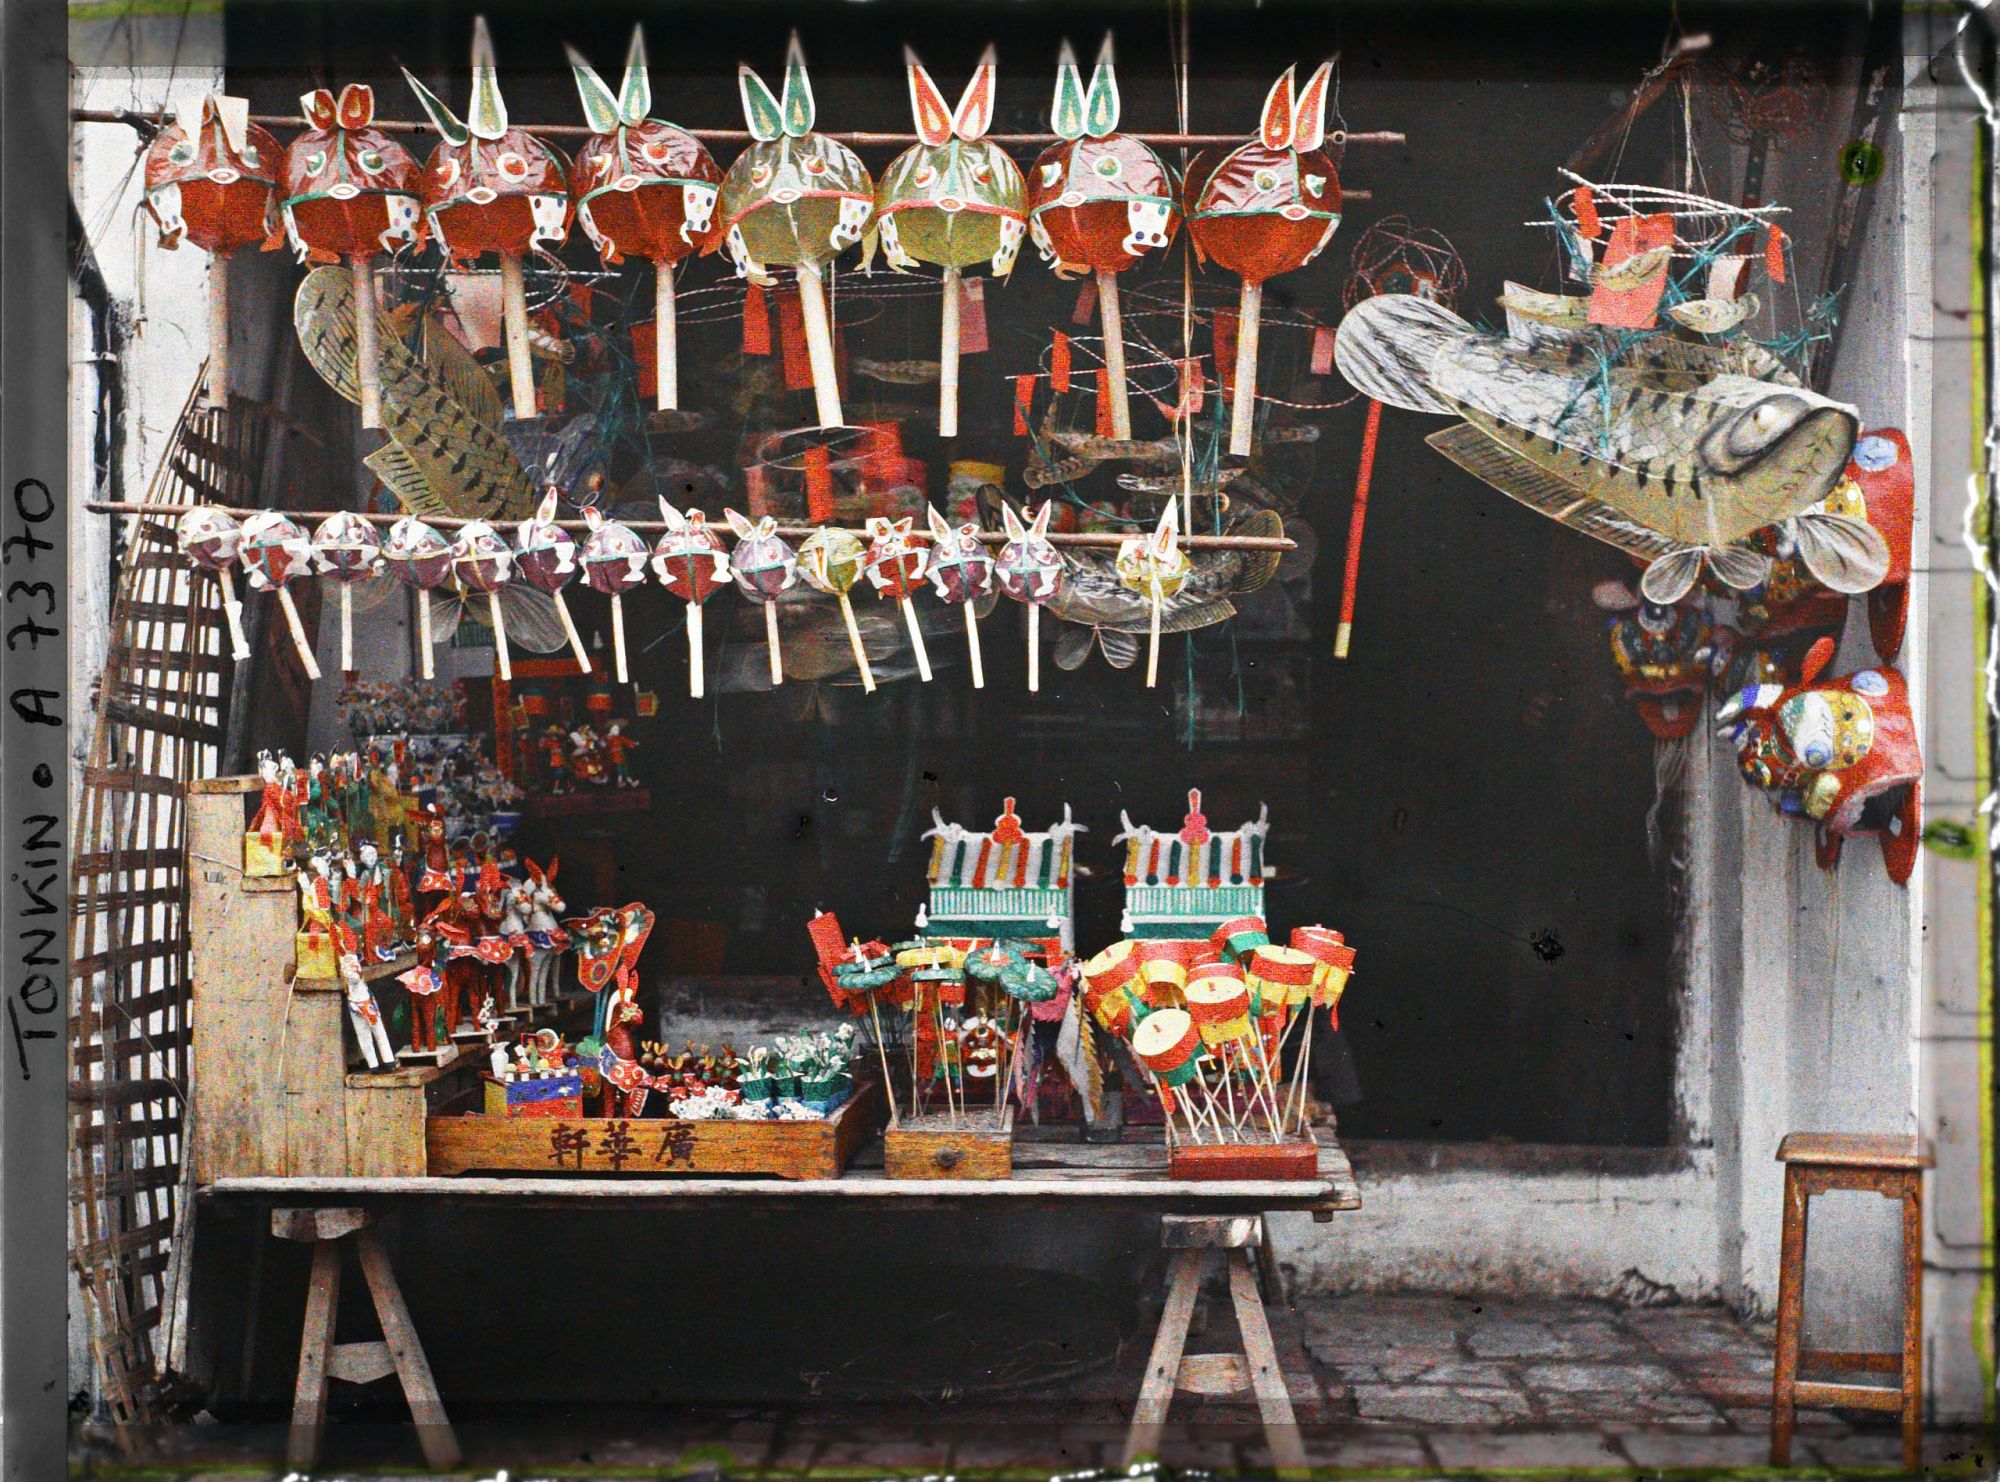 Bảo tàng chứa đến 1.382 tấm ảnh về Việt Nam: Trung thu Hà Nội đầy sắc màu - Ảnh 2.